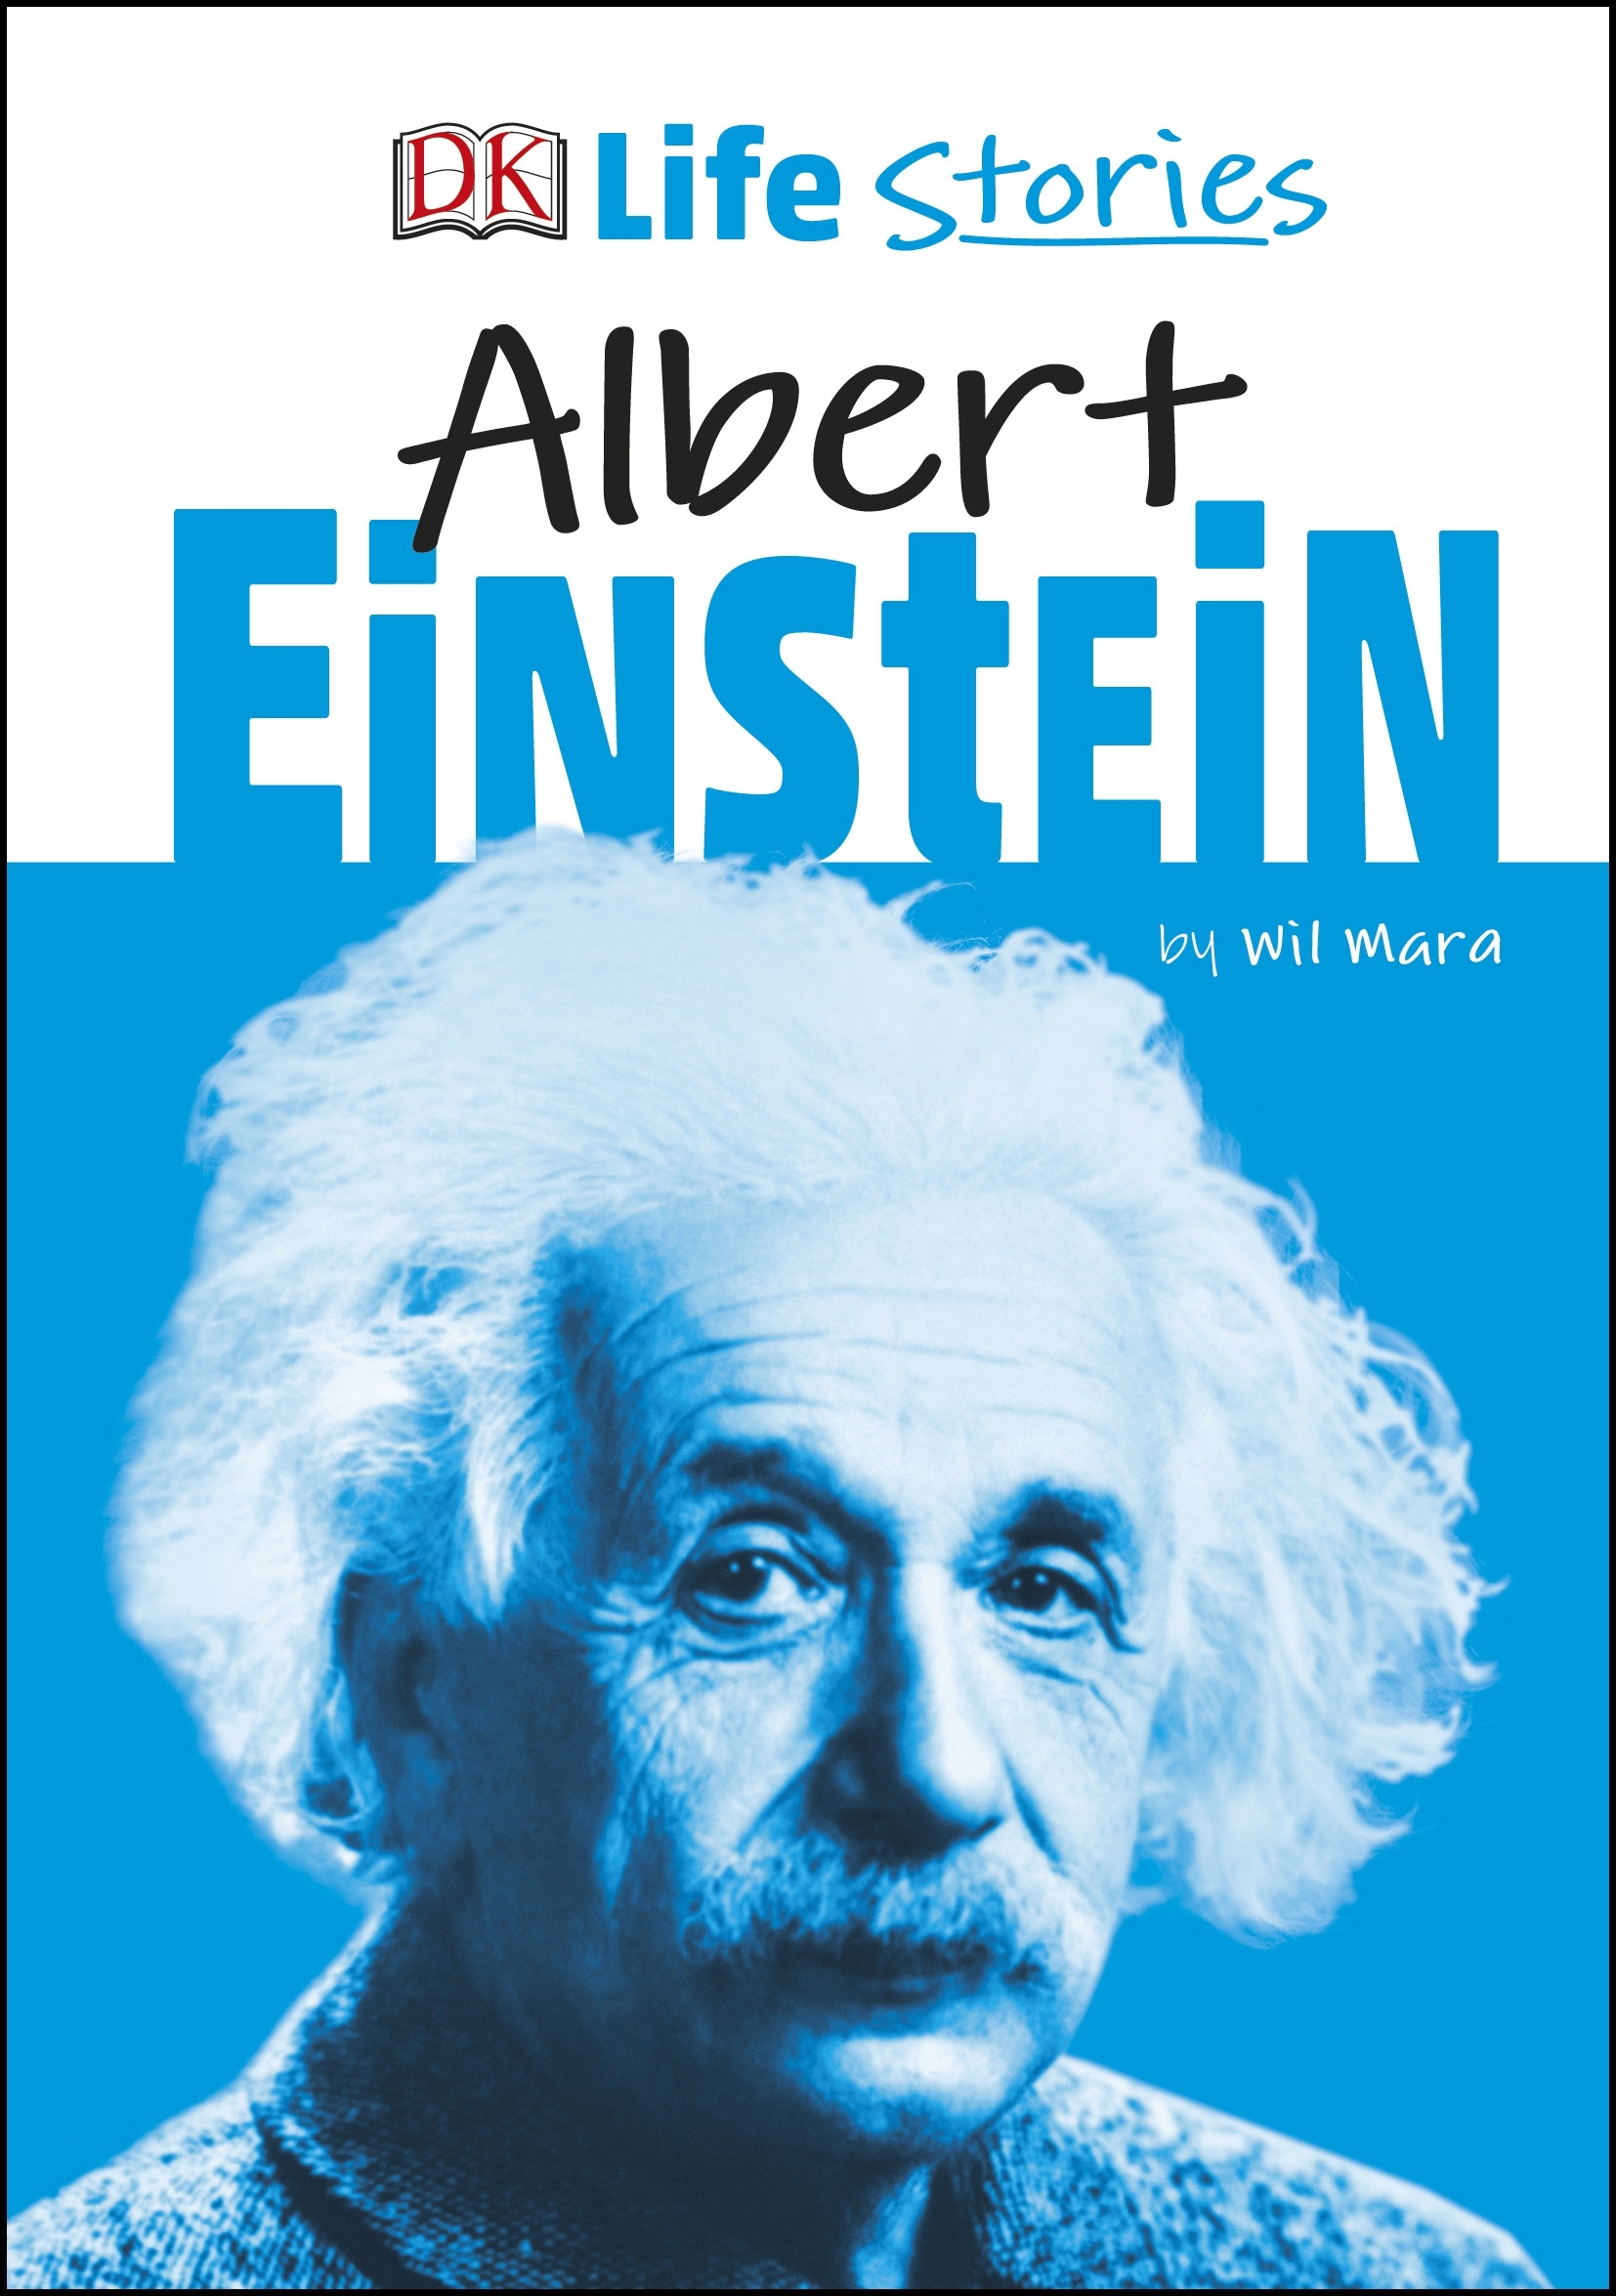 biography books about albert einstein